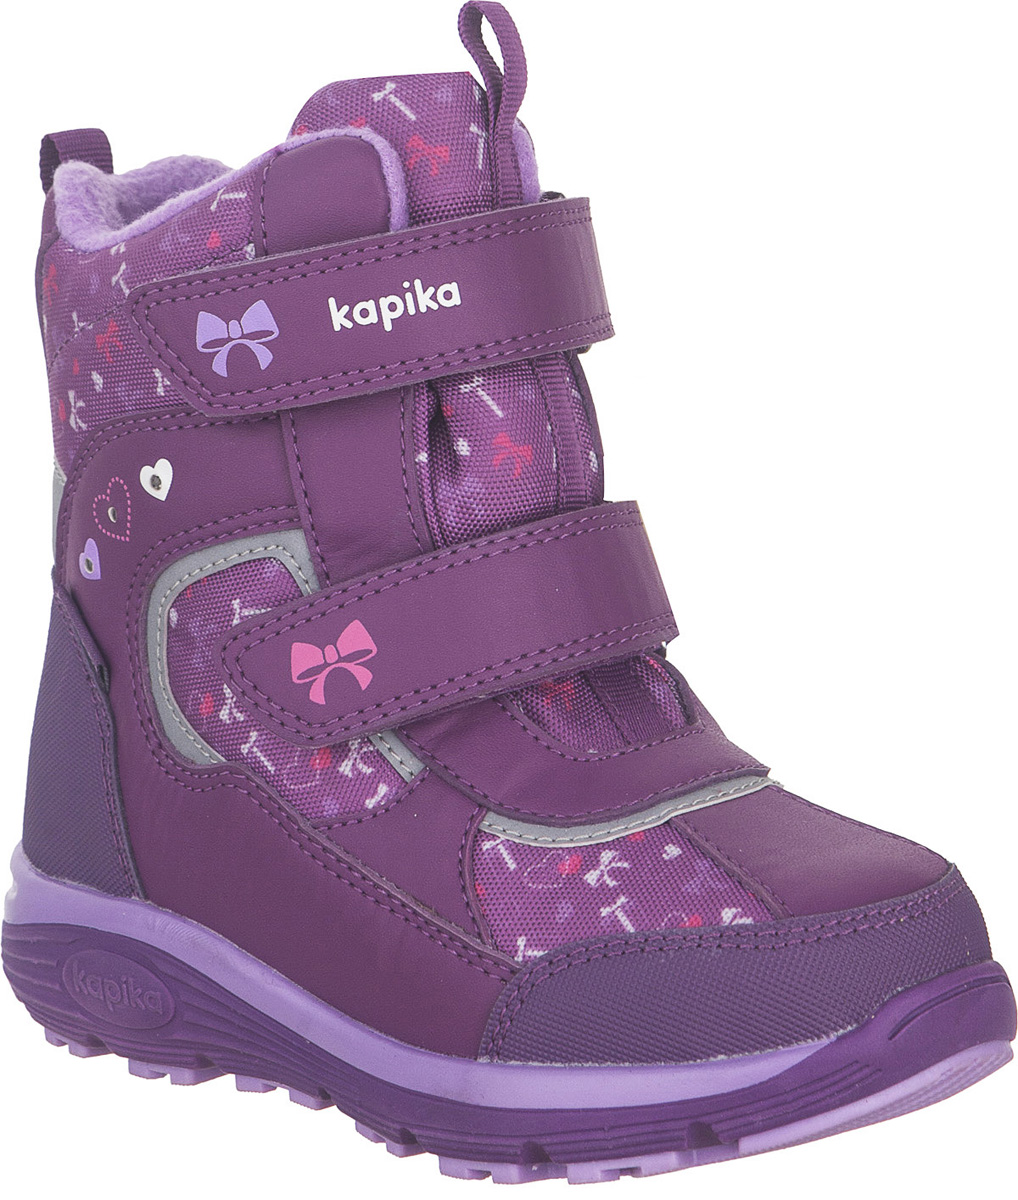 Ботинки для девочки Kapika KapiTEX, цвет: фиолетовый. 42258-2. Размер 30